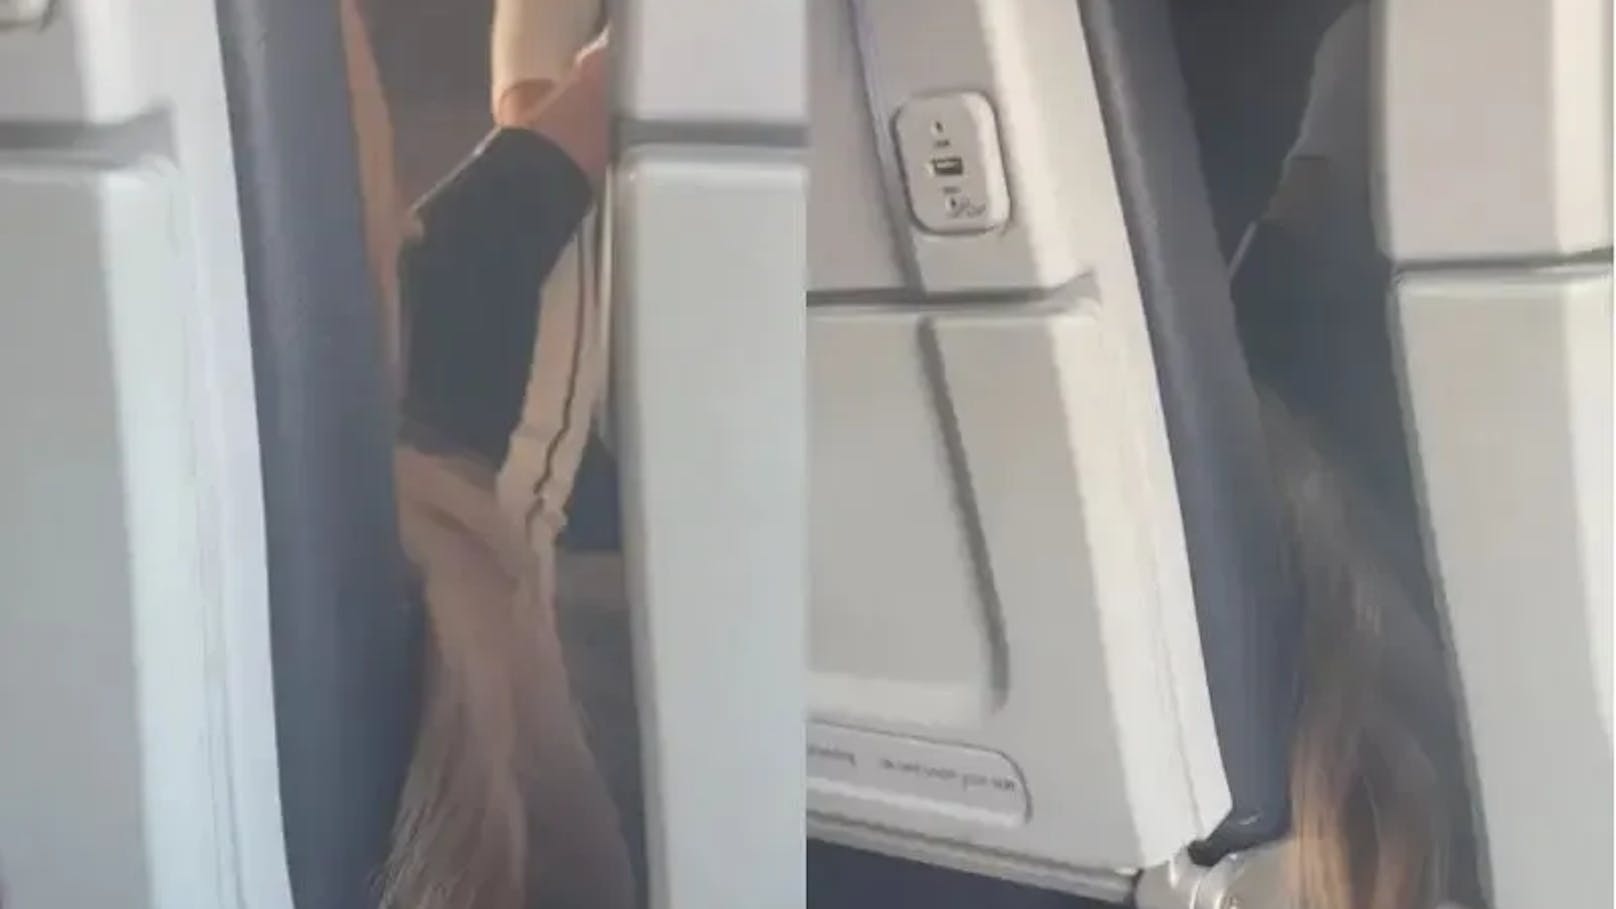 Betrunkene übergibt sich im Flieger auf Koffer von Frau